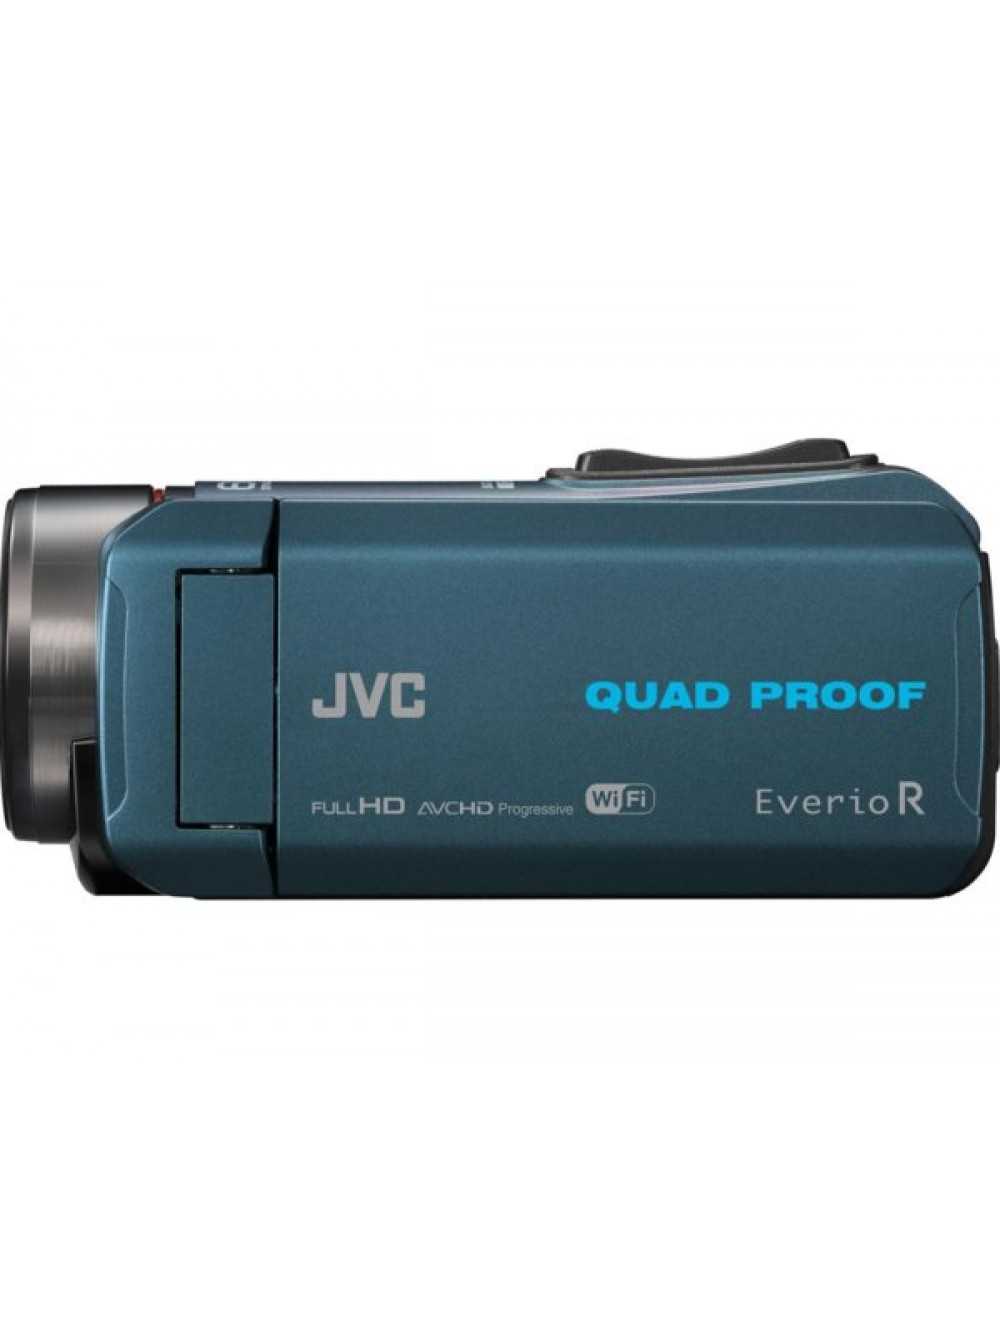 Видеокамера JVC GZ-EX515 - подробные характеристики обзоры видео фото Цены в интернет-магазинах где можно купить видеокамеру JVC GZ-EX515